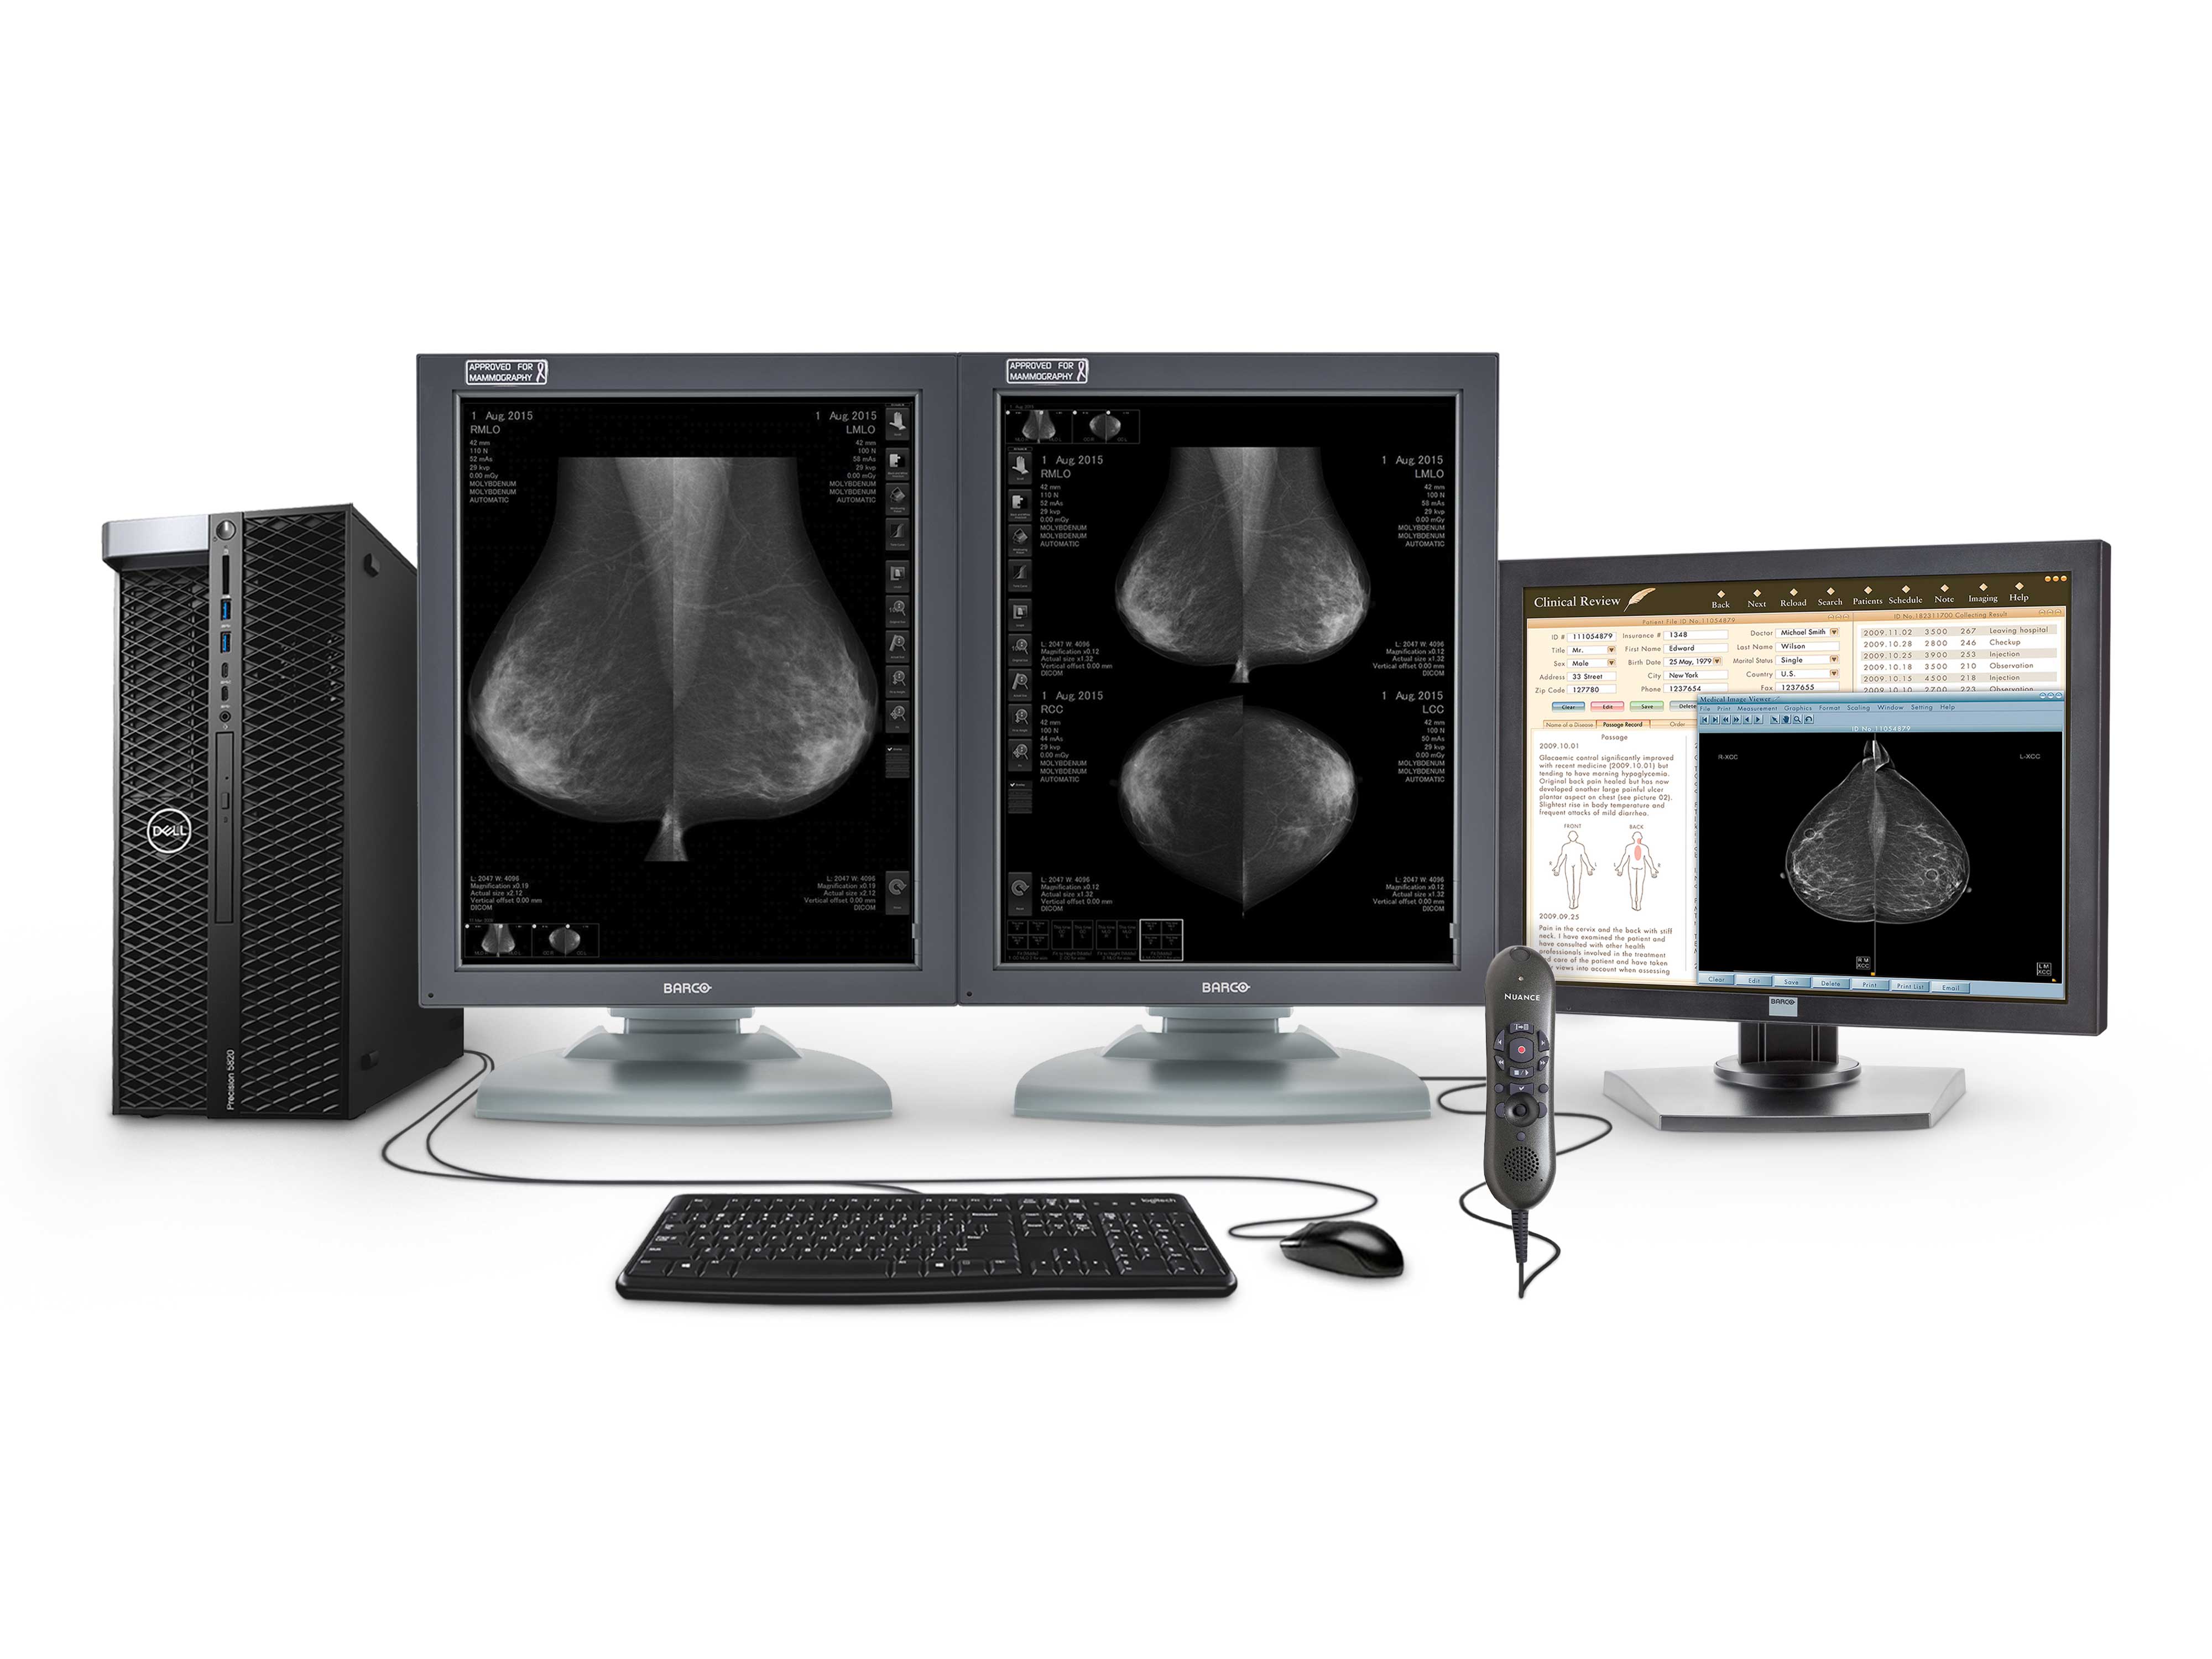 Estación completa de lectura de mamografía | Barco Pantallas en escala de grises de 5MP | Estación de trabajo Dell | Micrófono de dictado | Monitor de lista de trabajo (5121T5820R)